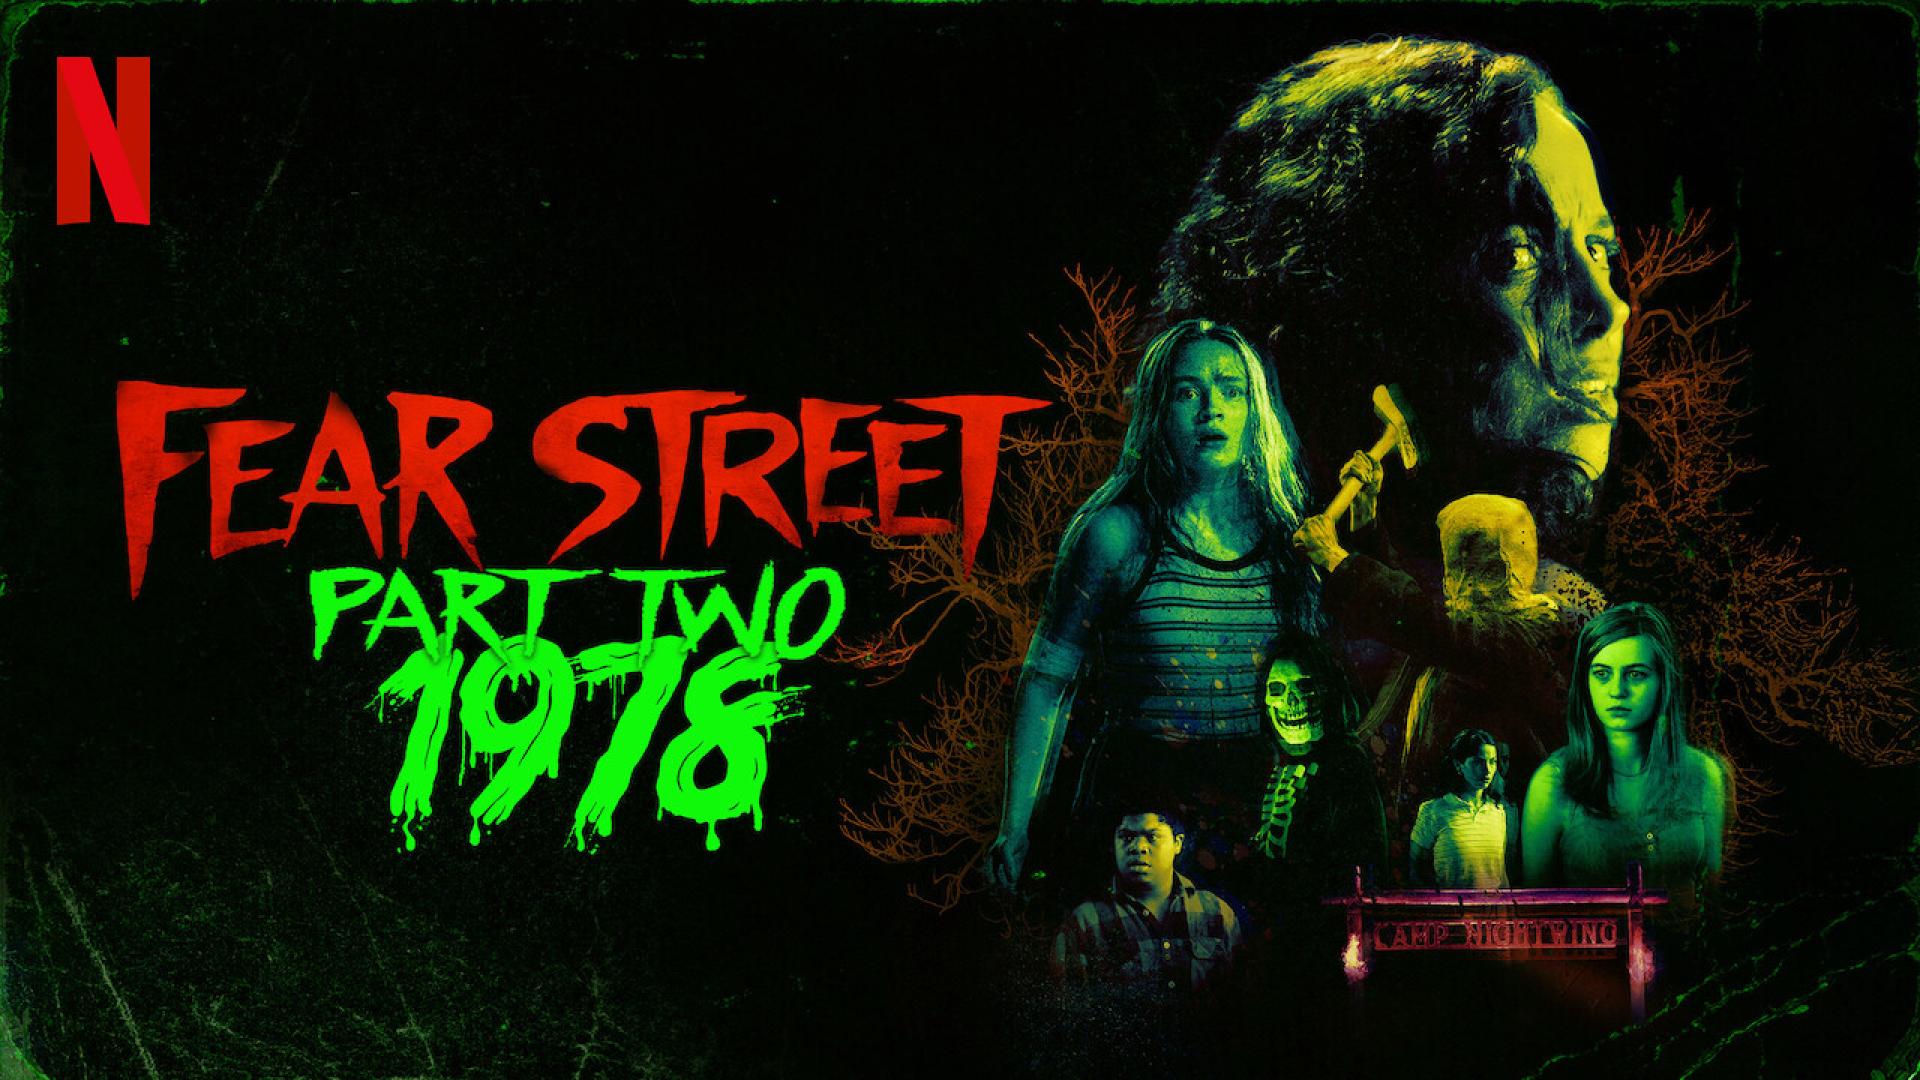 Fear Street: Part Two - 1978 / A félelem utcája 2. rész: 1978 (2021)